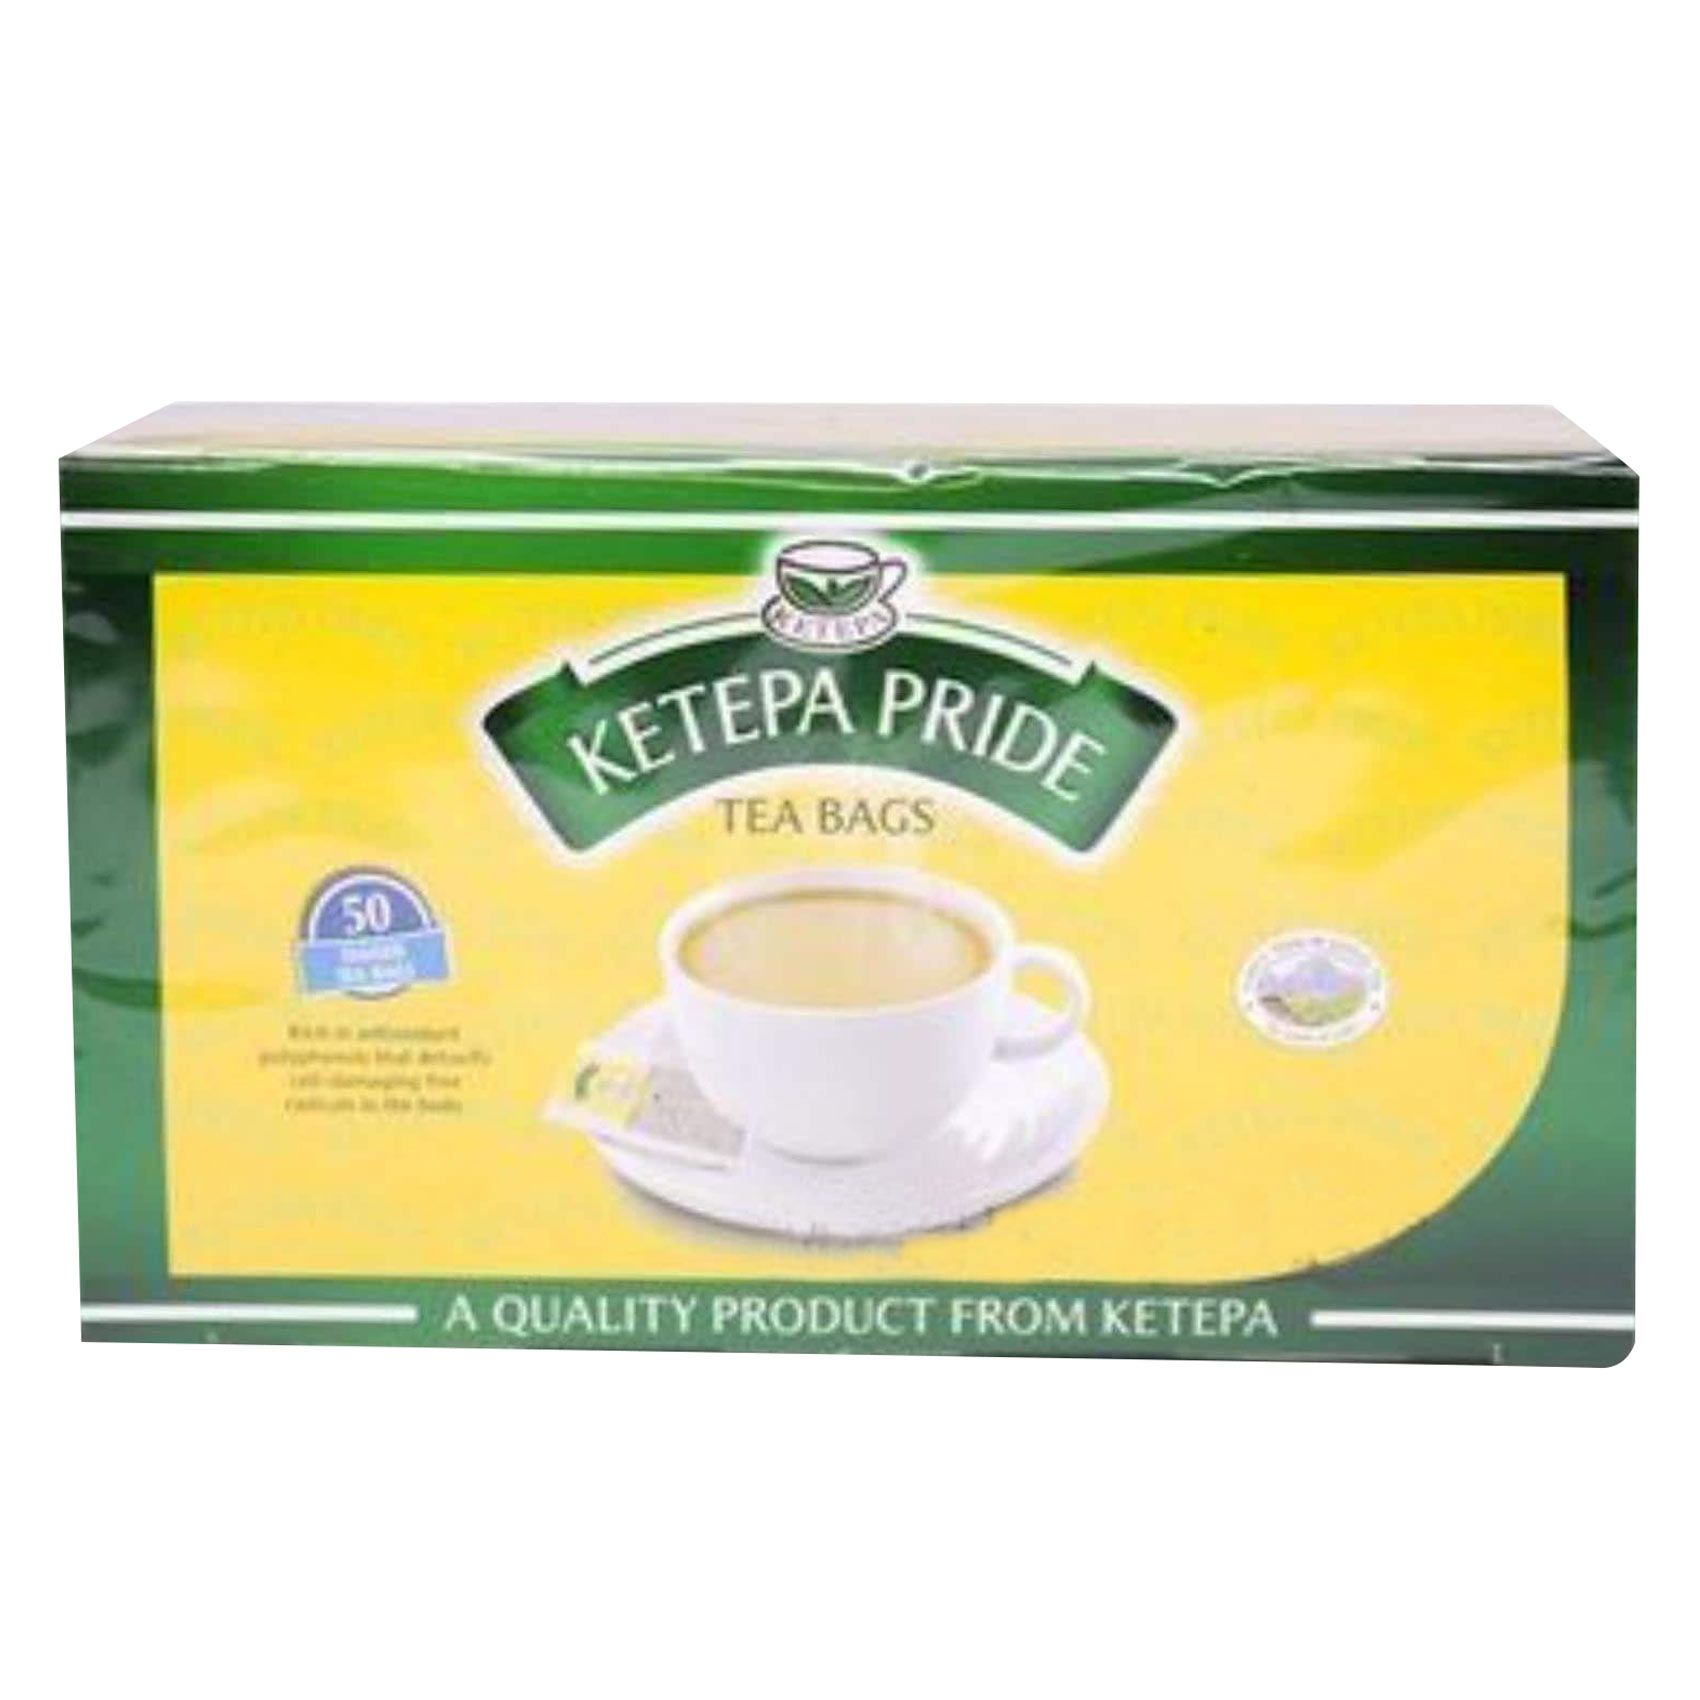 Ketepa Pride Economy Tagged Tea Bags 100g